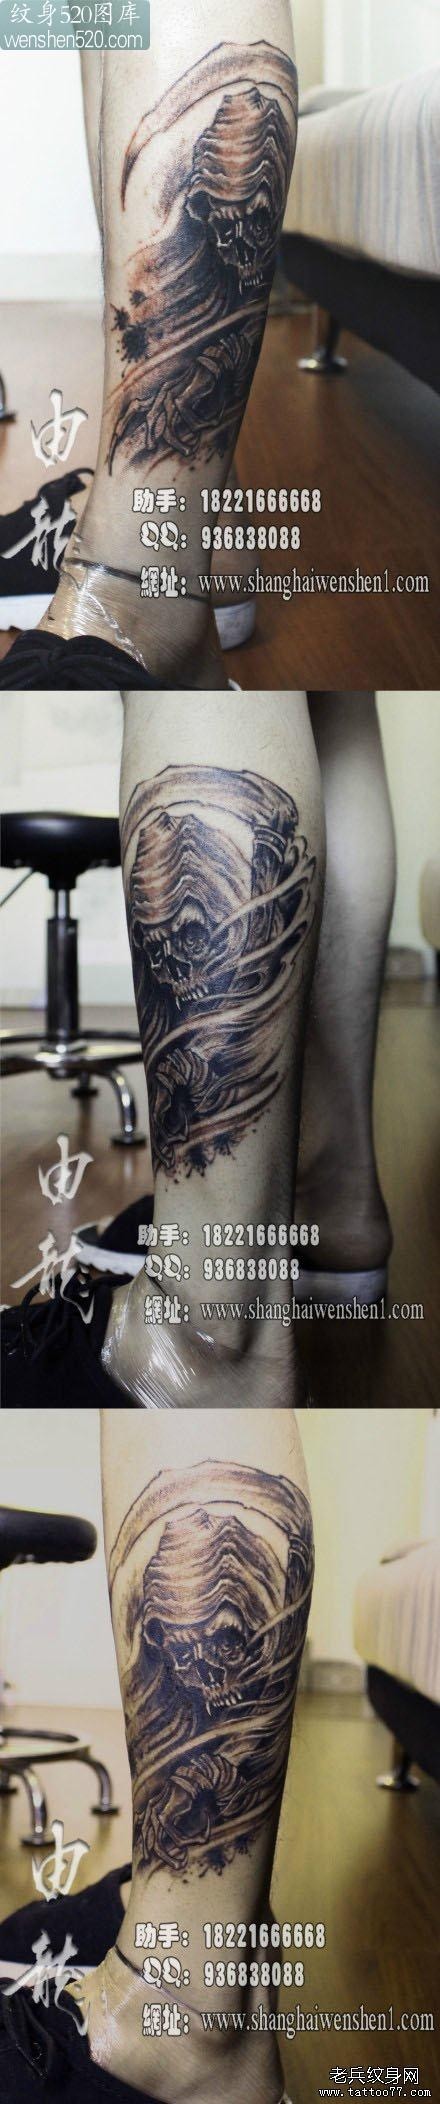 男人腿部经典潮流的黑灰死神纹身图案